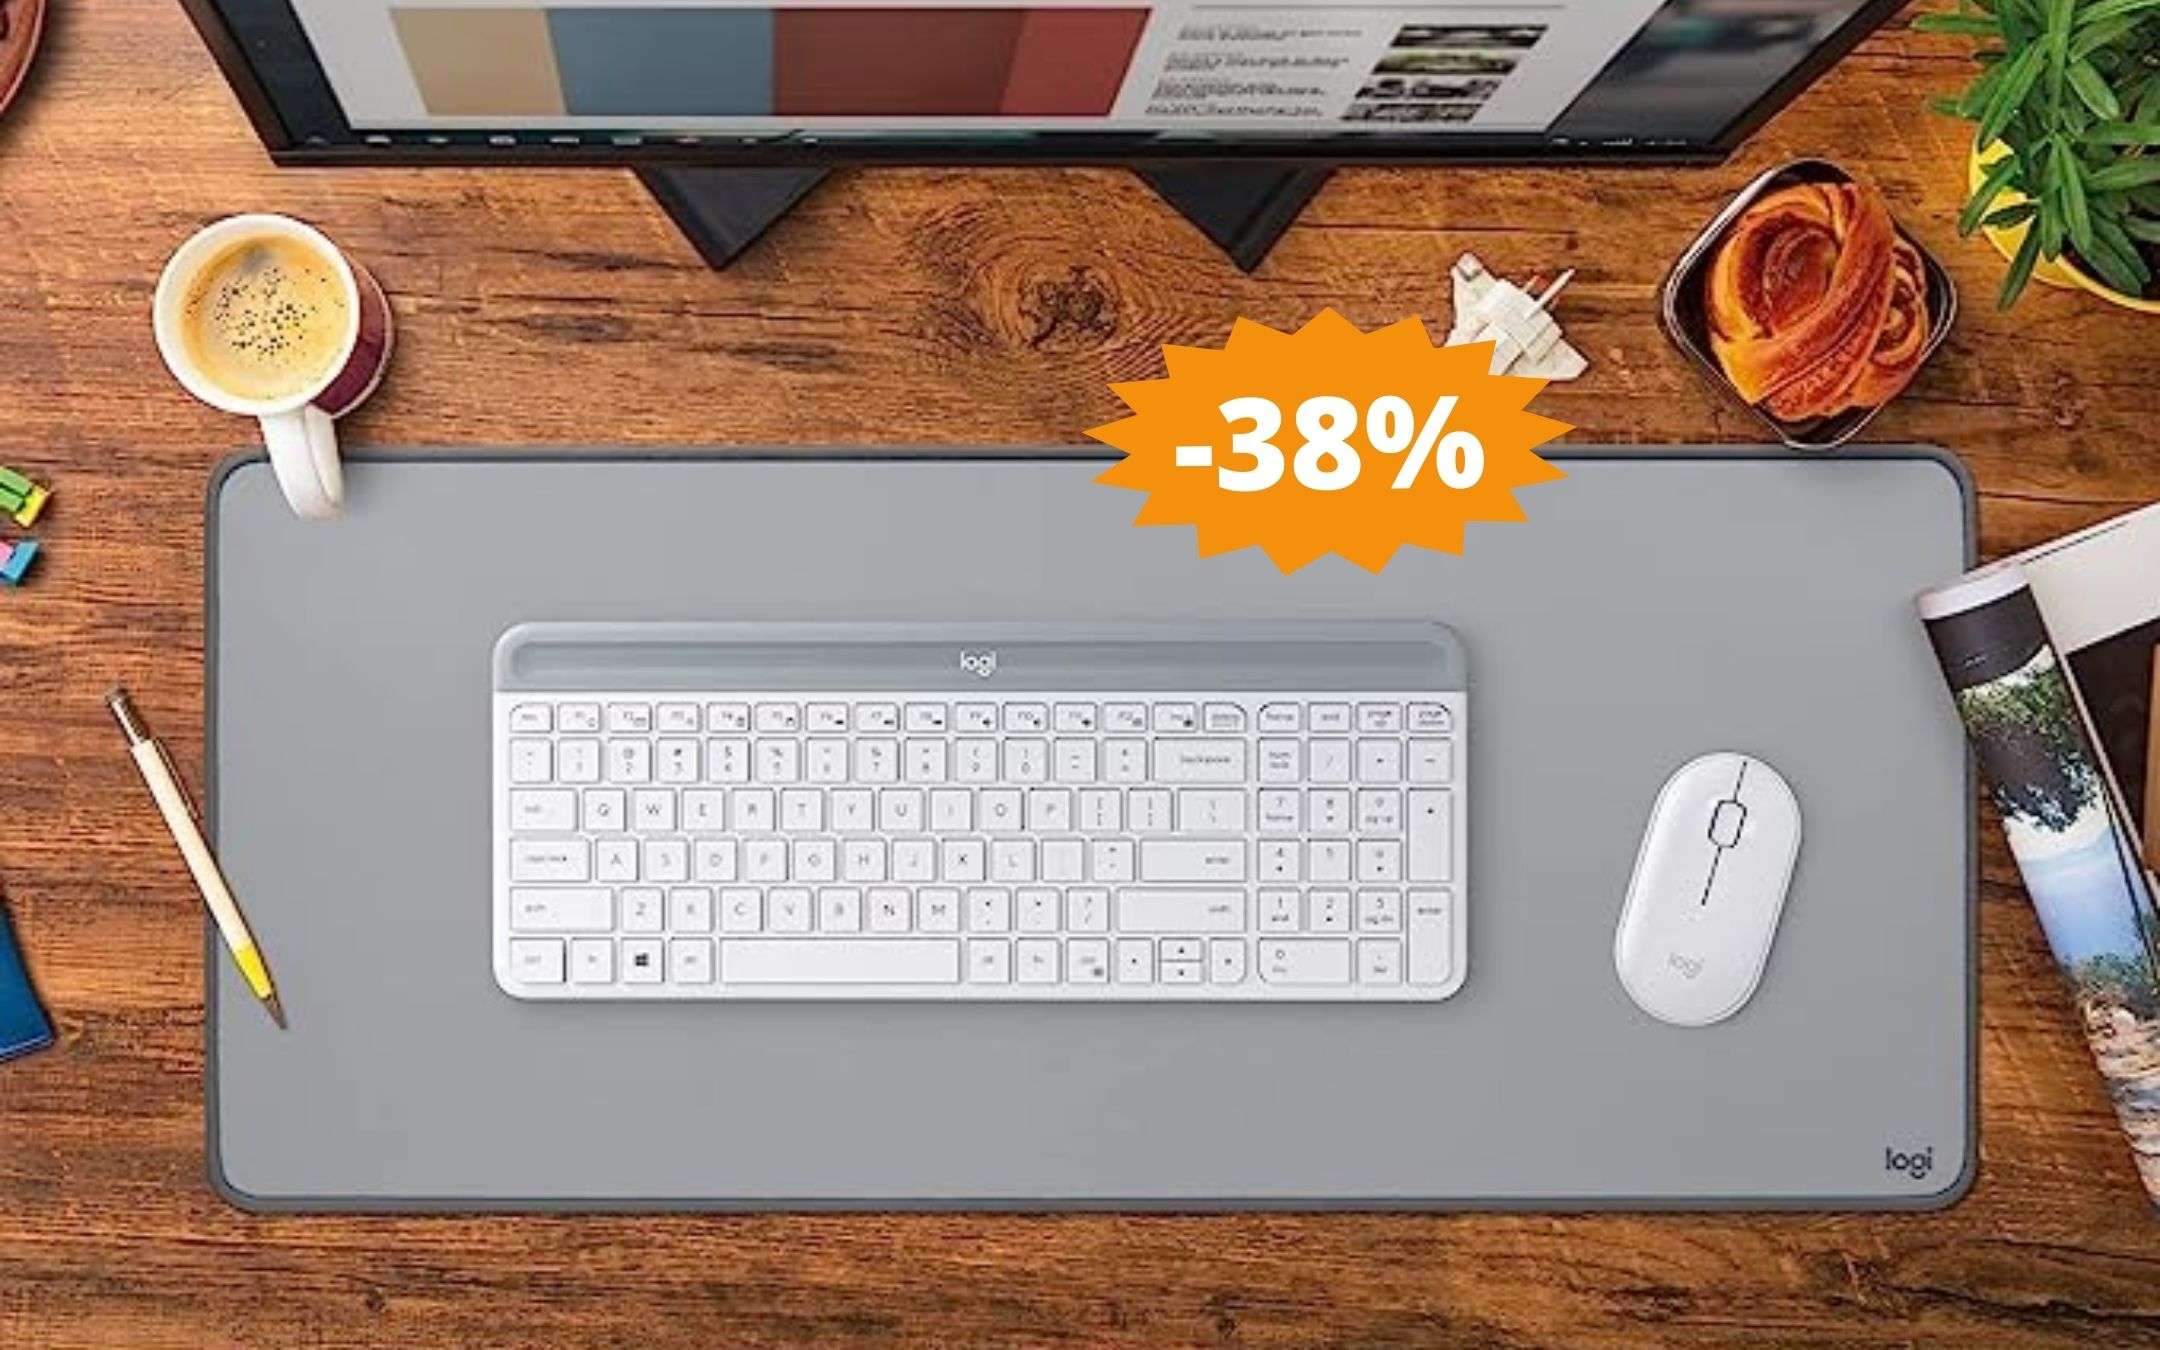 Tappetino Logitech Desk Mat: stile e design per la tua scrivania (-38%)